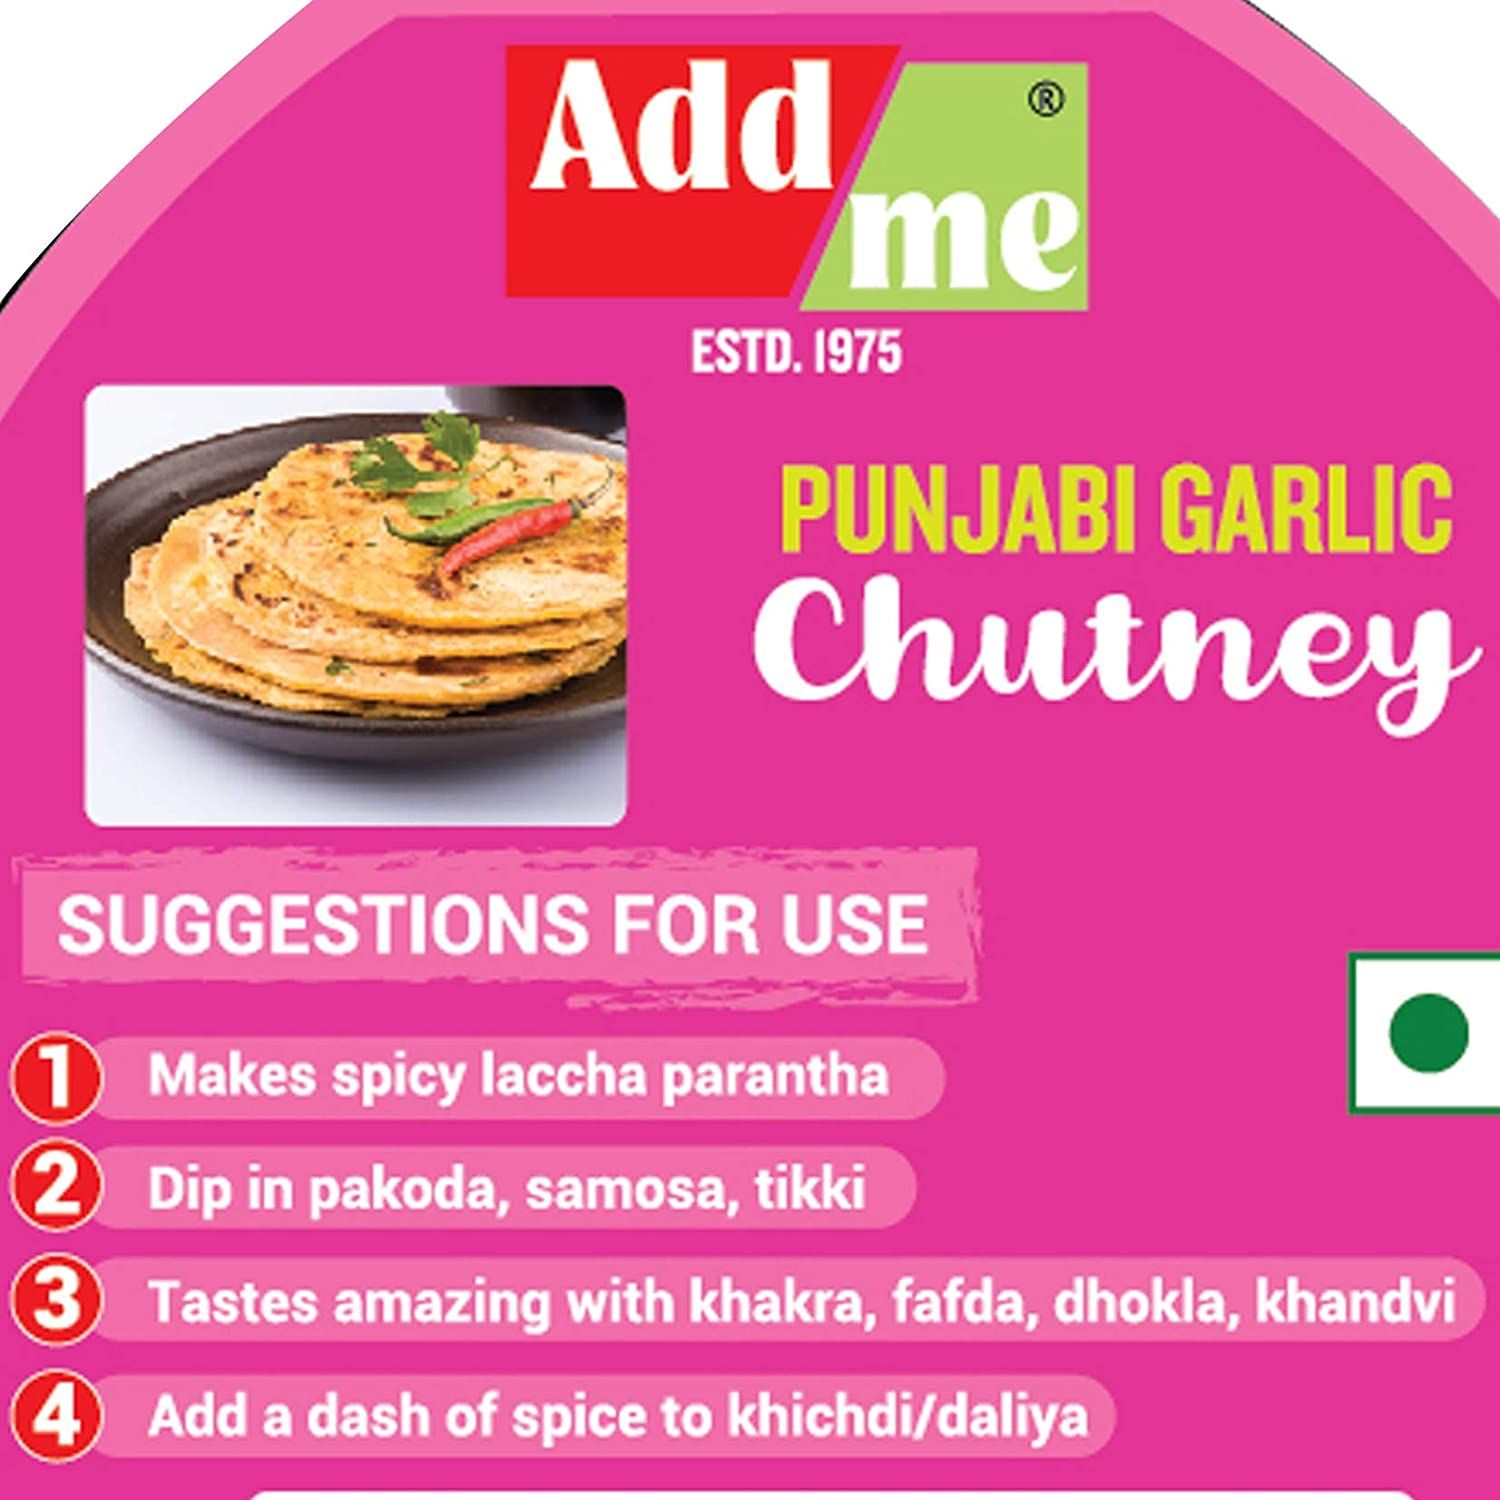 Add Me Punjabi Garlic Sauce and Dips Chutney Image